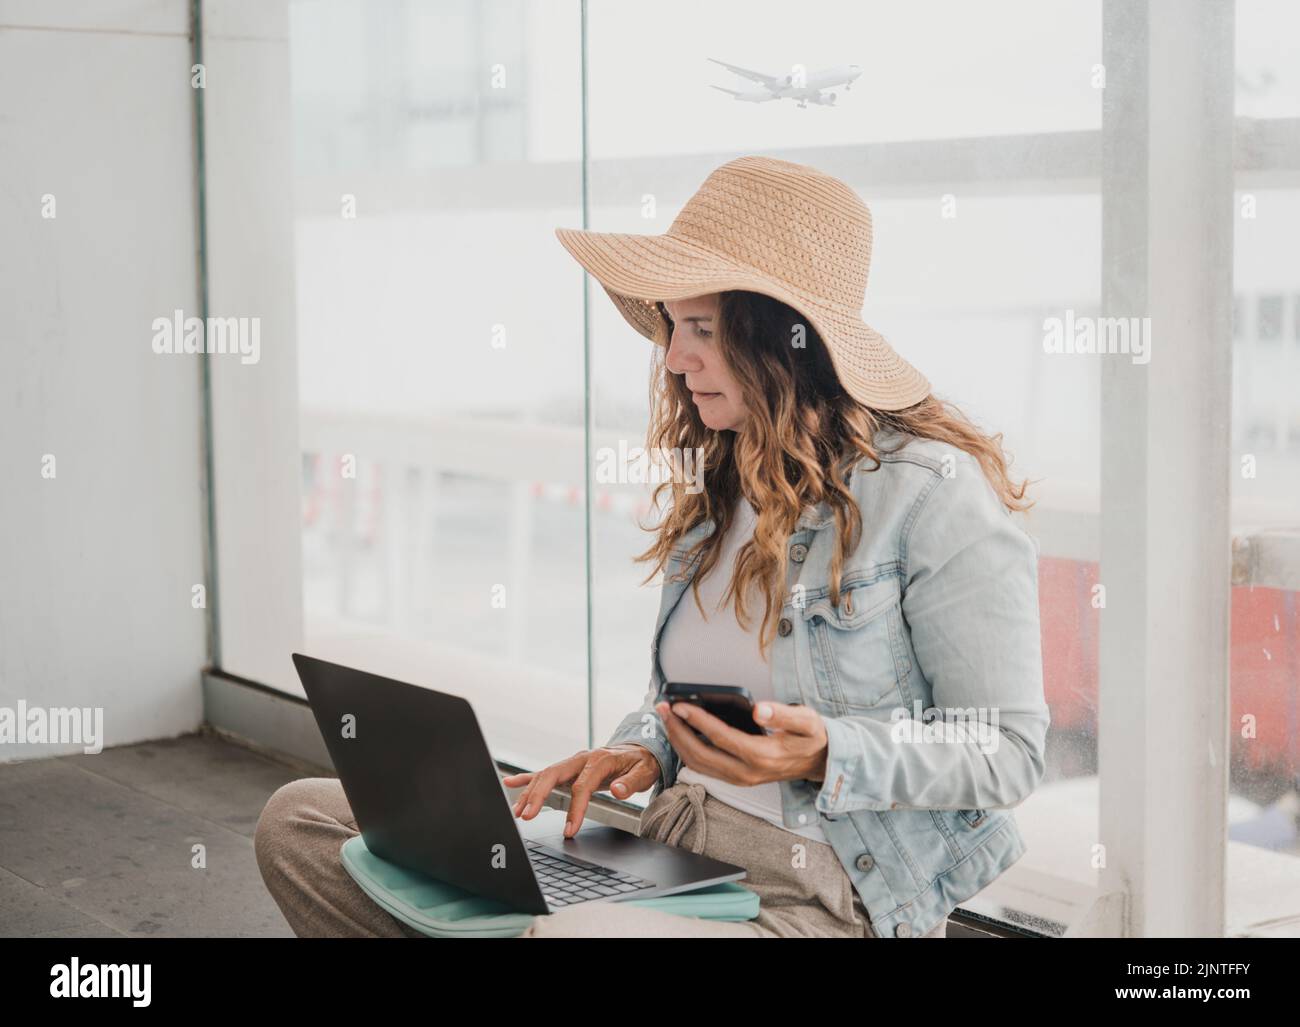 Femme utilisant des appareils près de la fenêtre de l'aéroport Banque D'Images